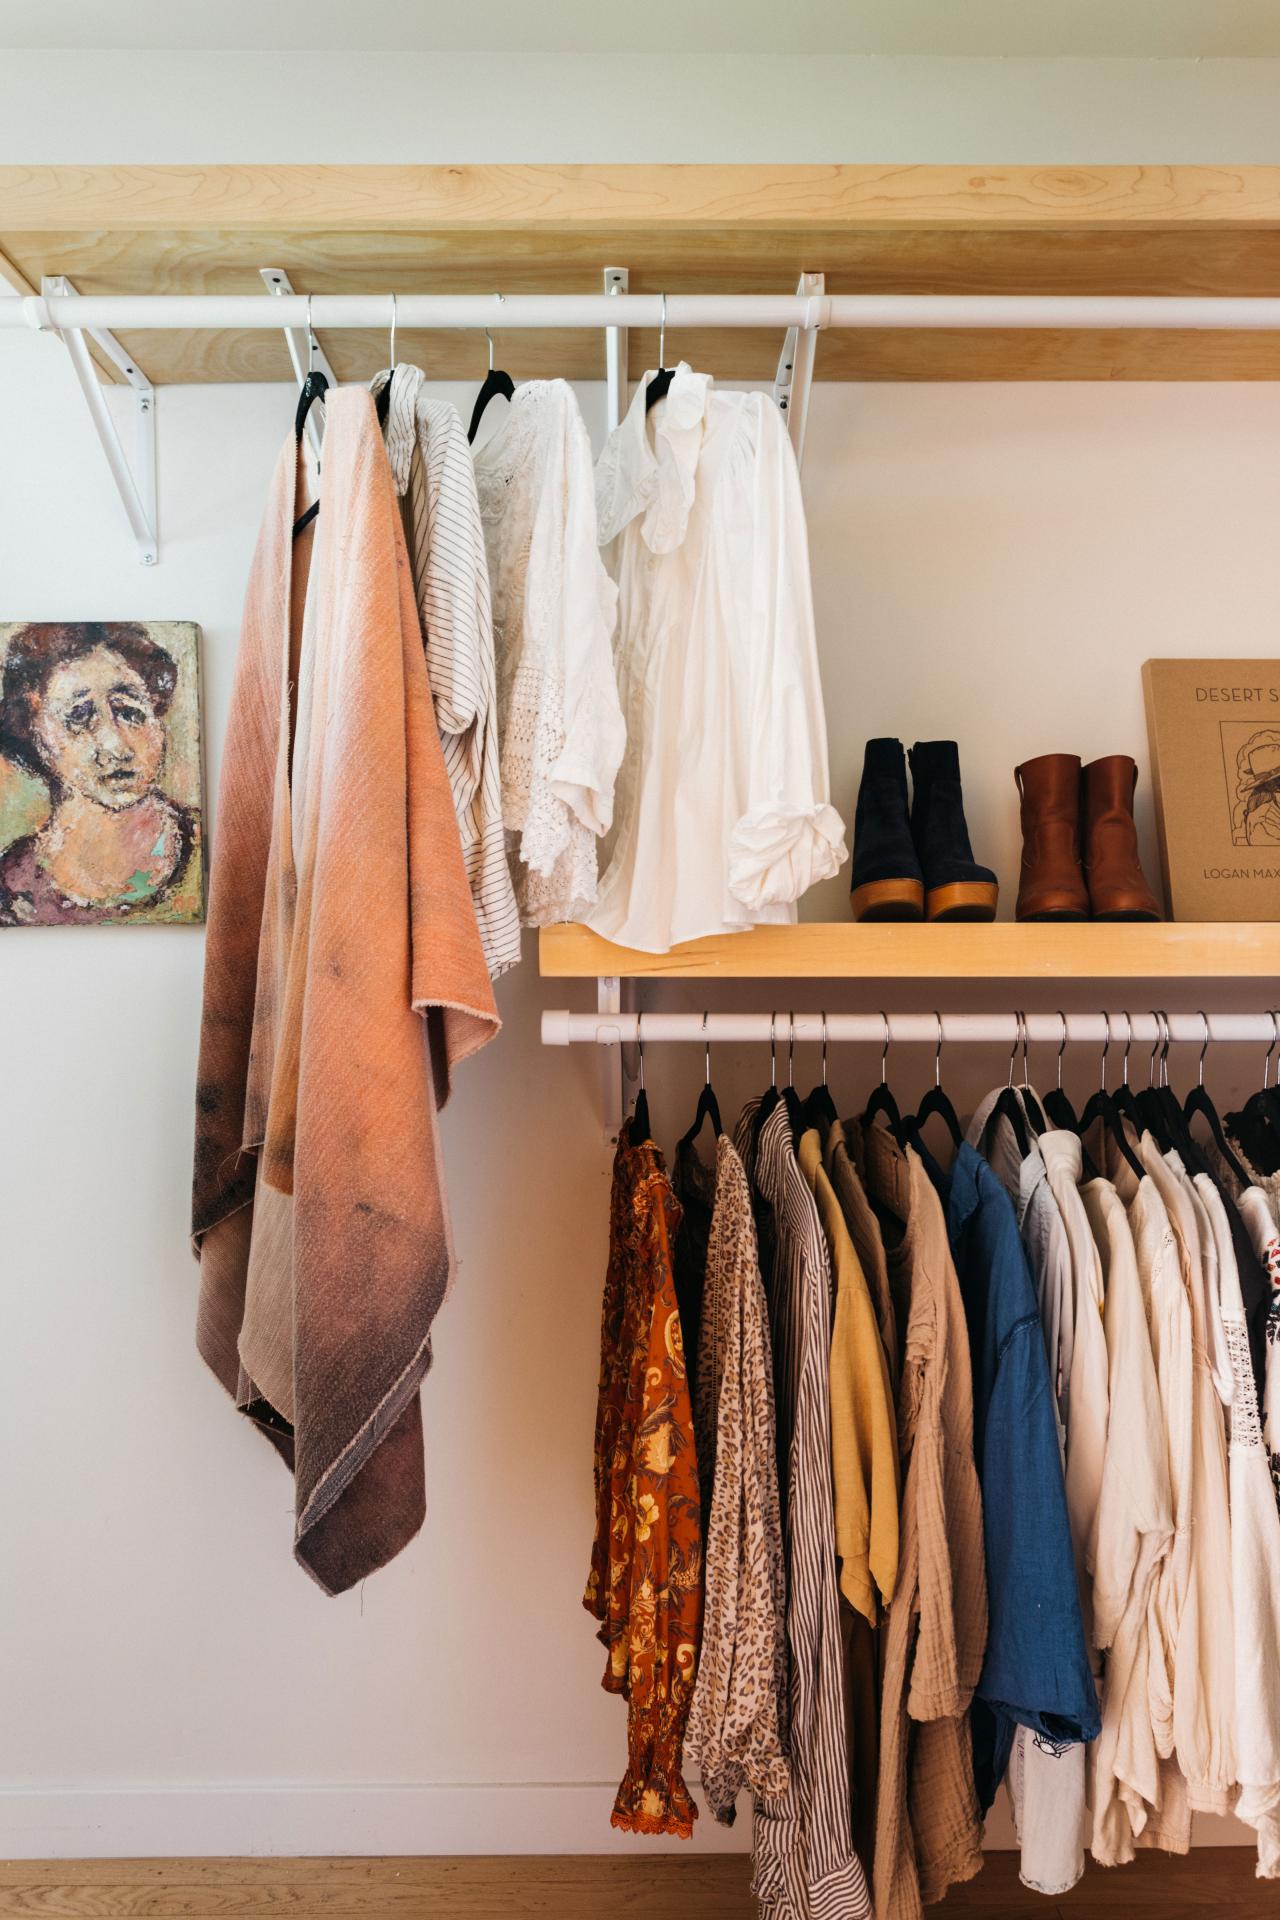 DIY Clothes Racks and Portable Closet Storage Ideas